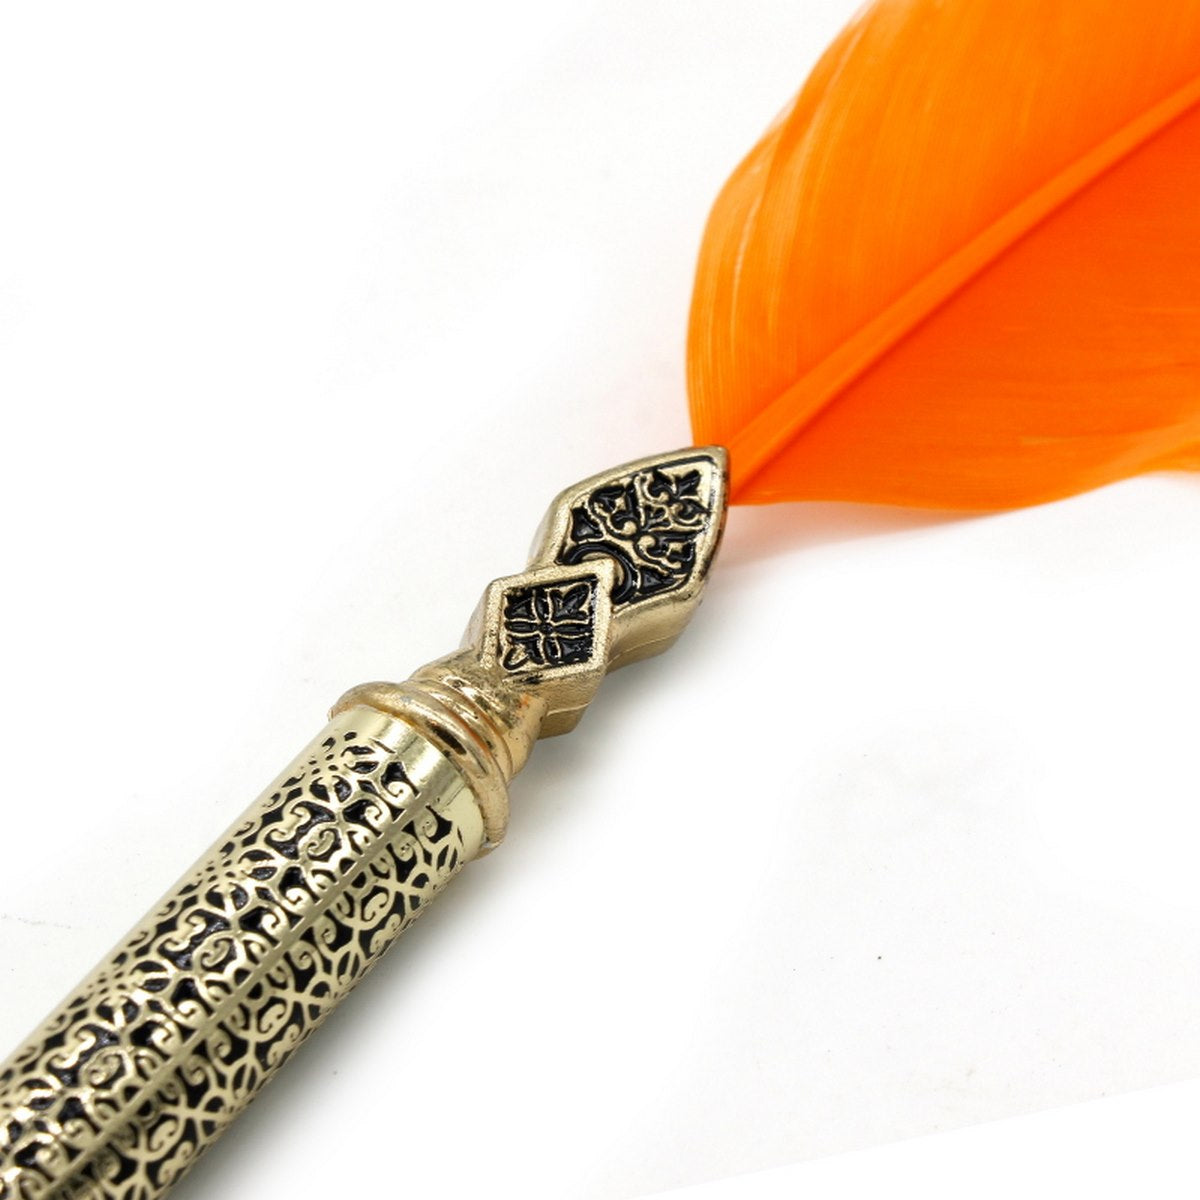 jags-mumbai Feather Pens Feather Ball Pen Design Gold